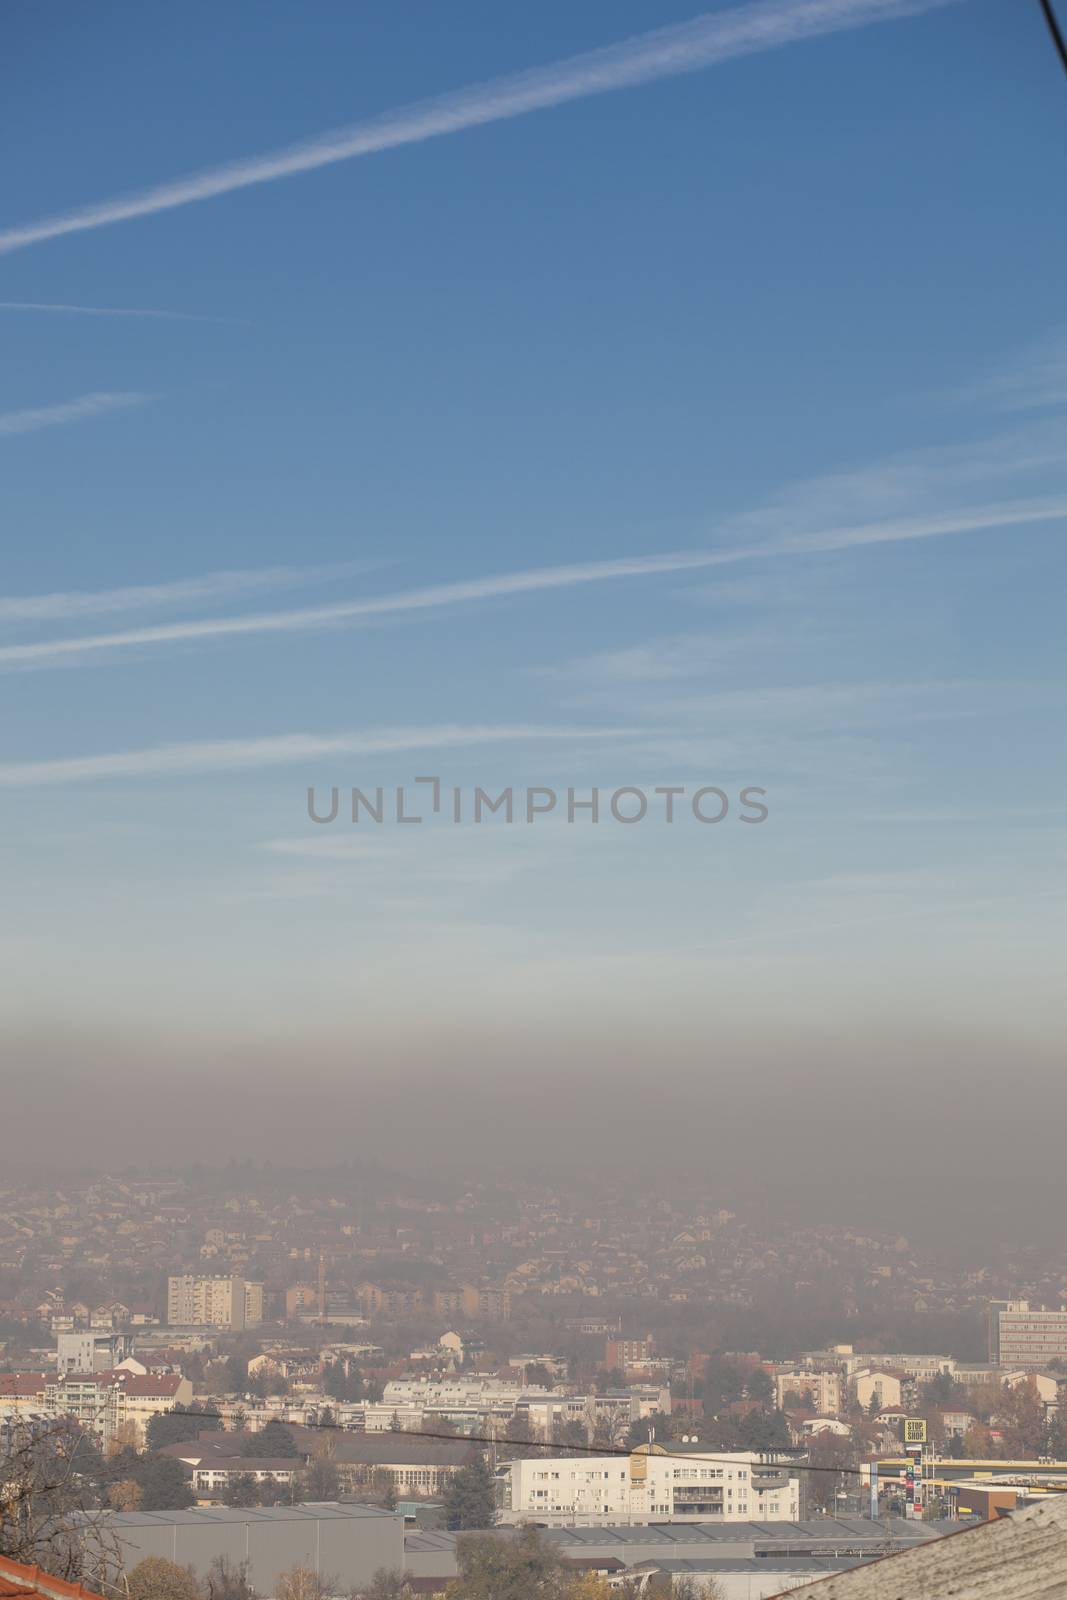 Smog and airpoluton air polution, Europe, Serbia, Valjevo city